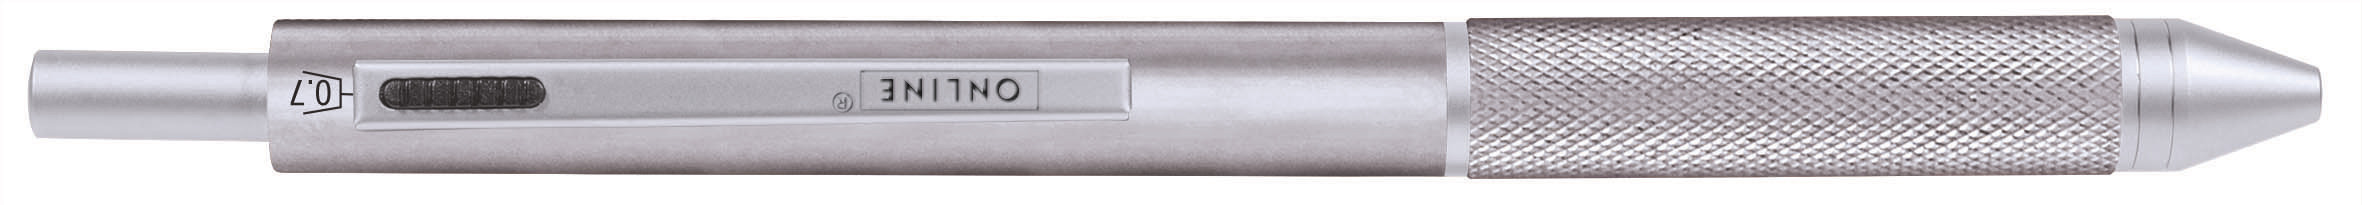 ONLINE Multipen M 32045/3D 4-in-1 Silver